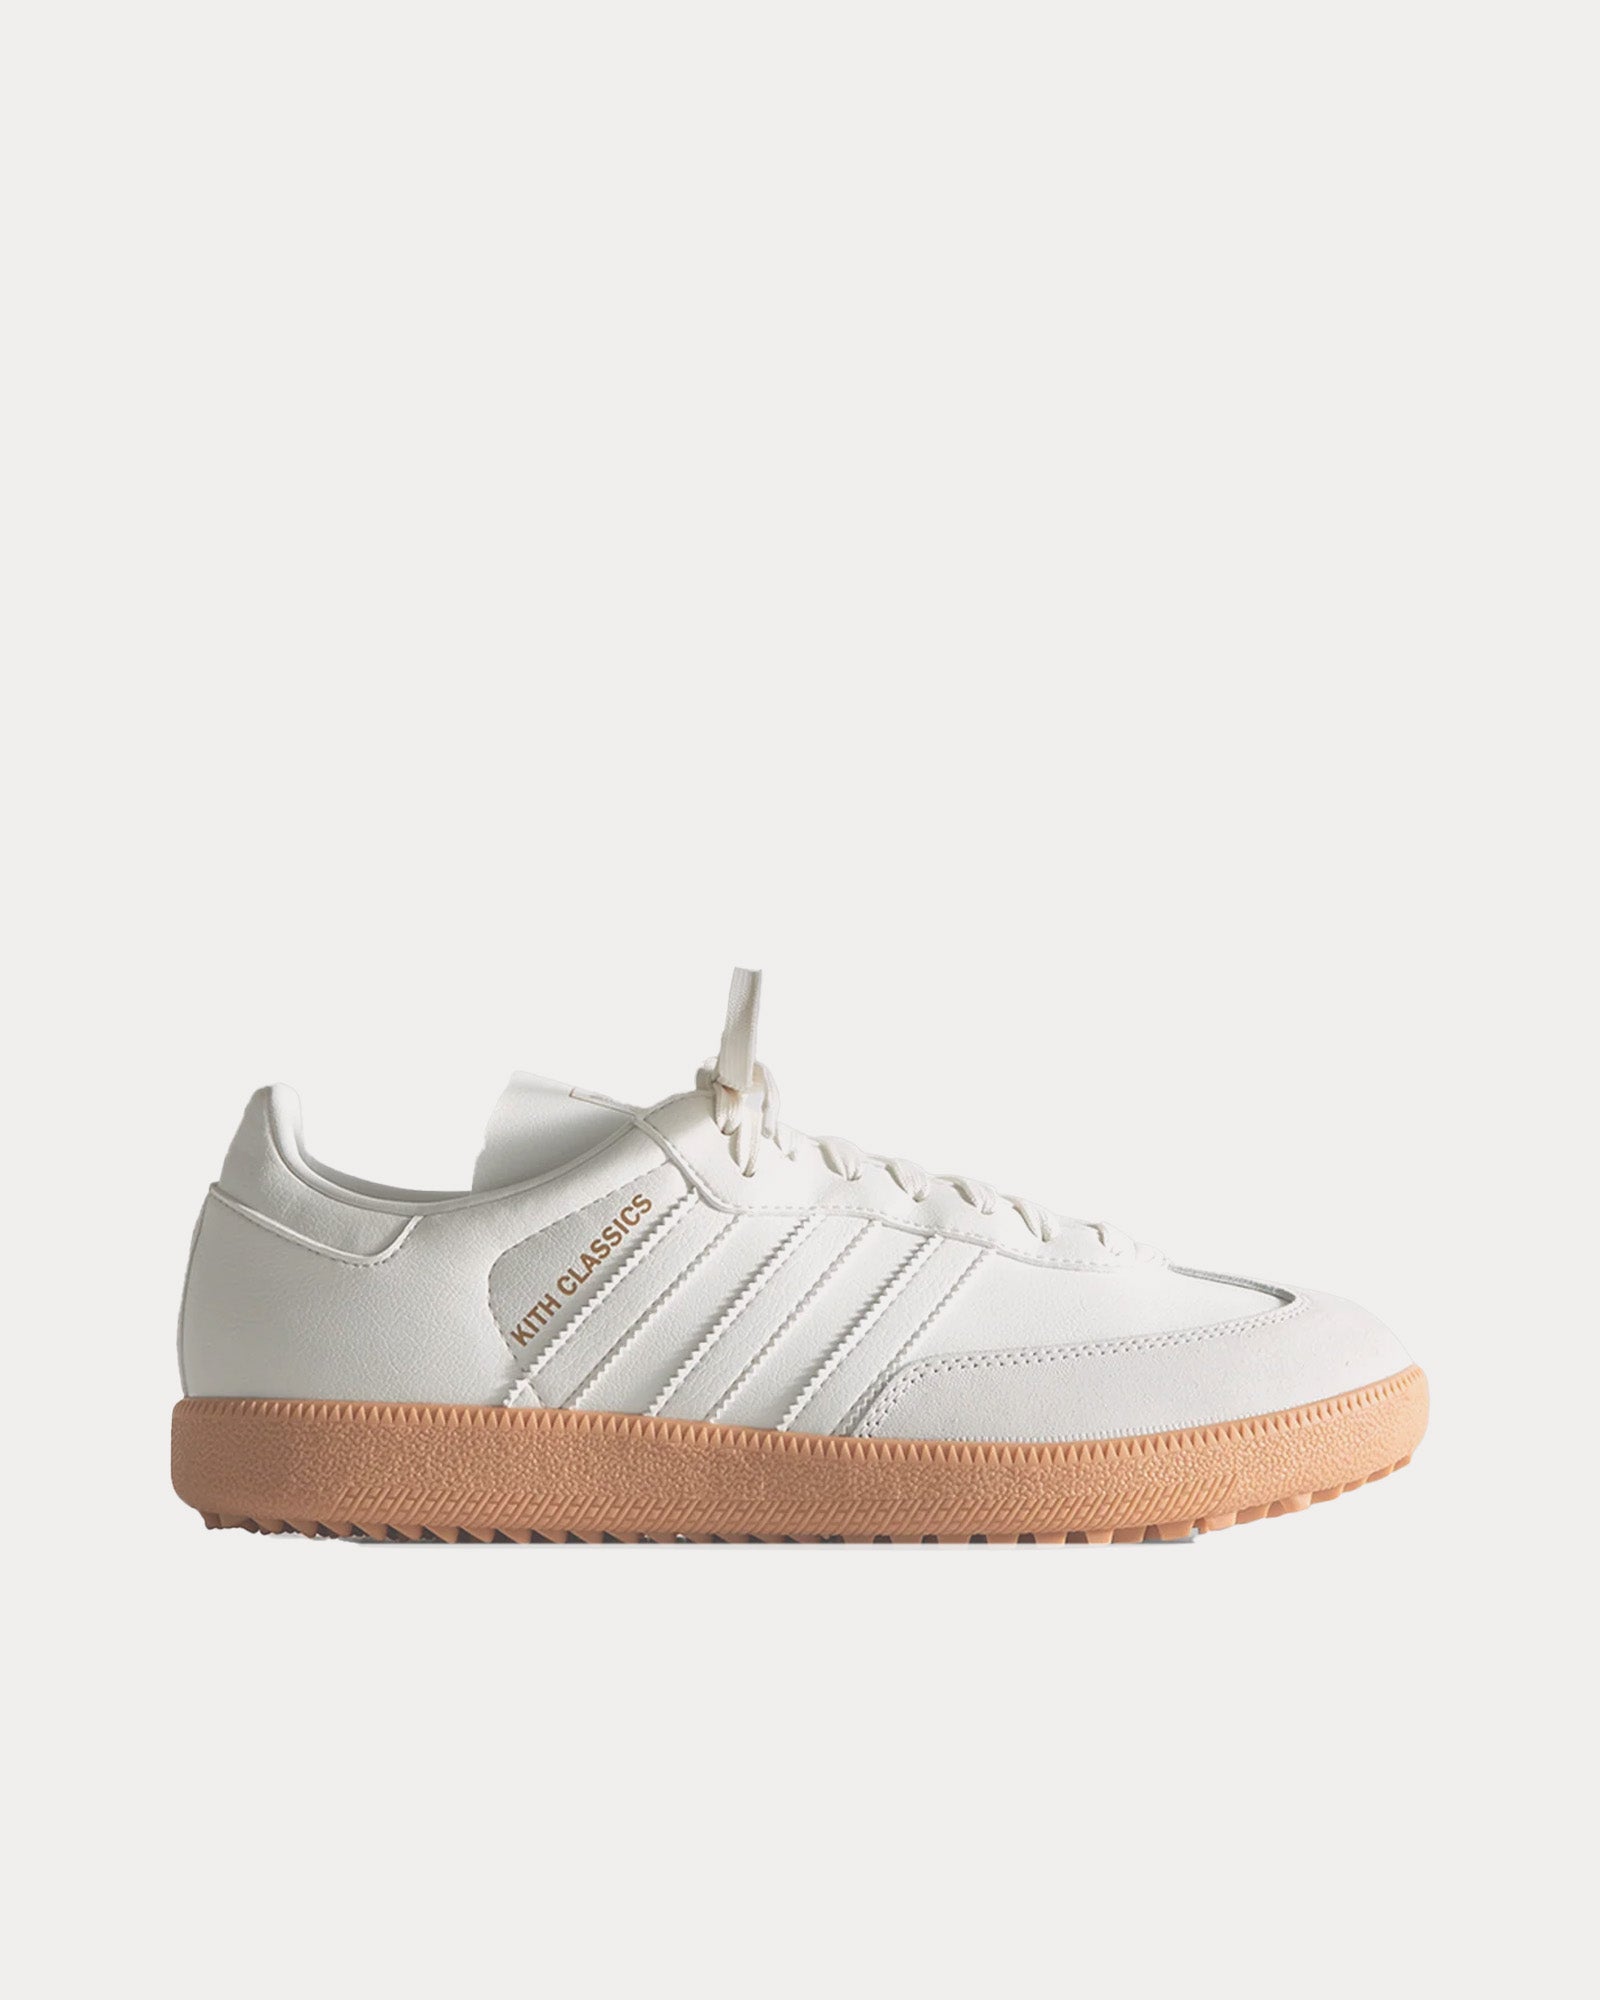 Adidas x Kith - Samba Golf White Tint / Gum Low Top Sneakers